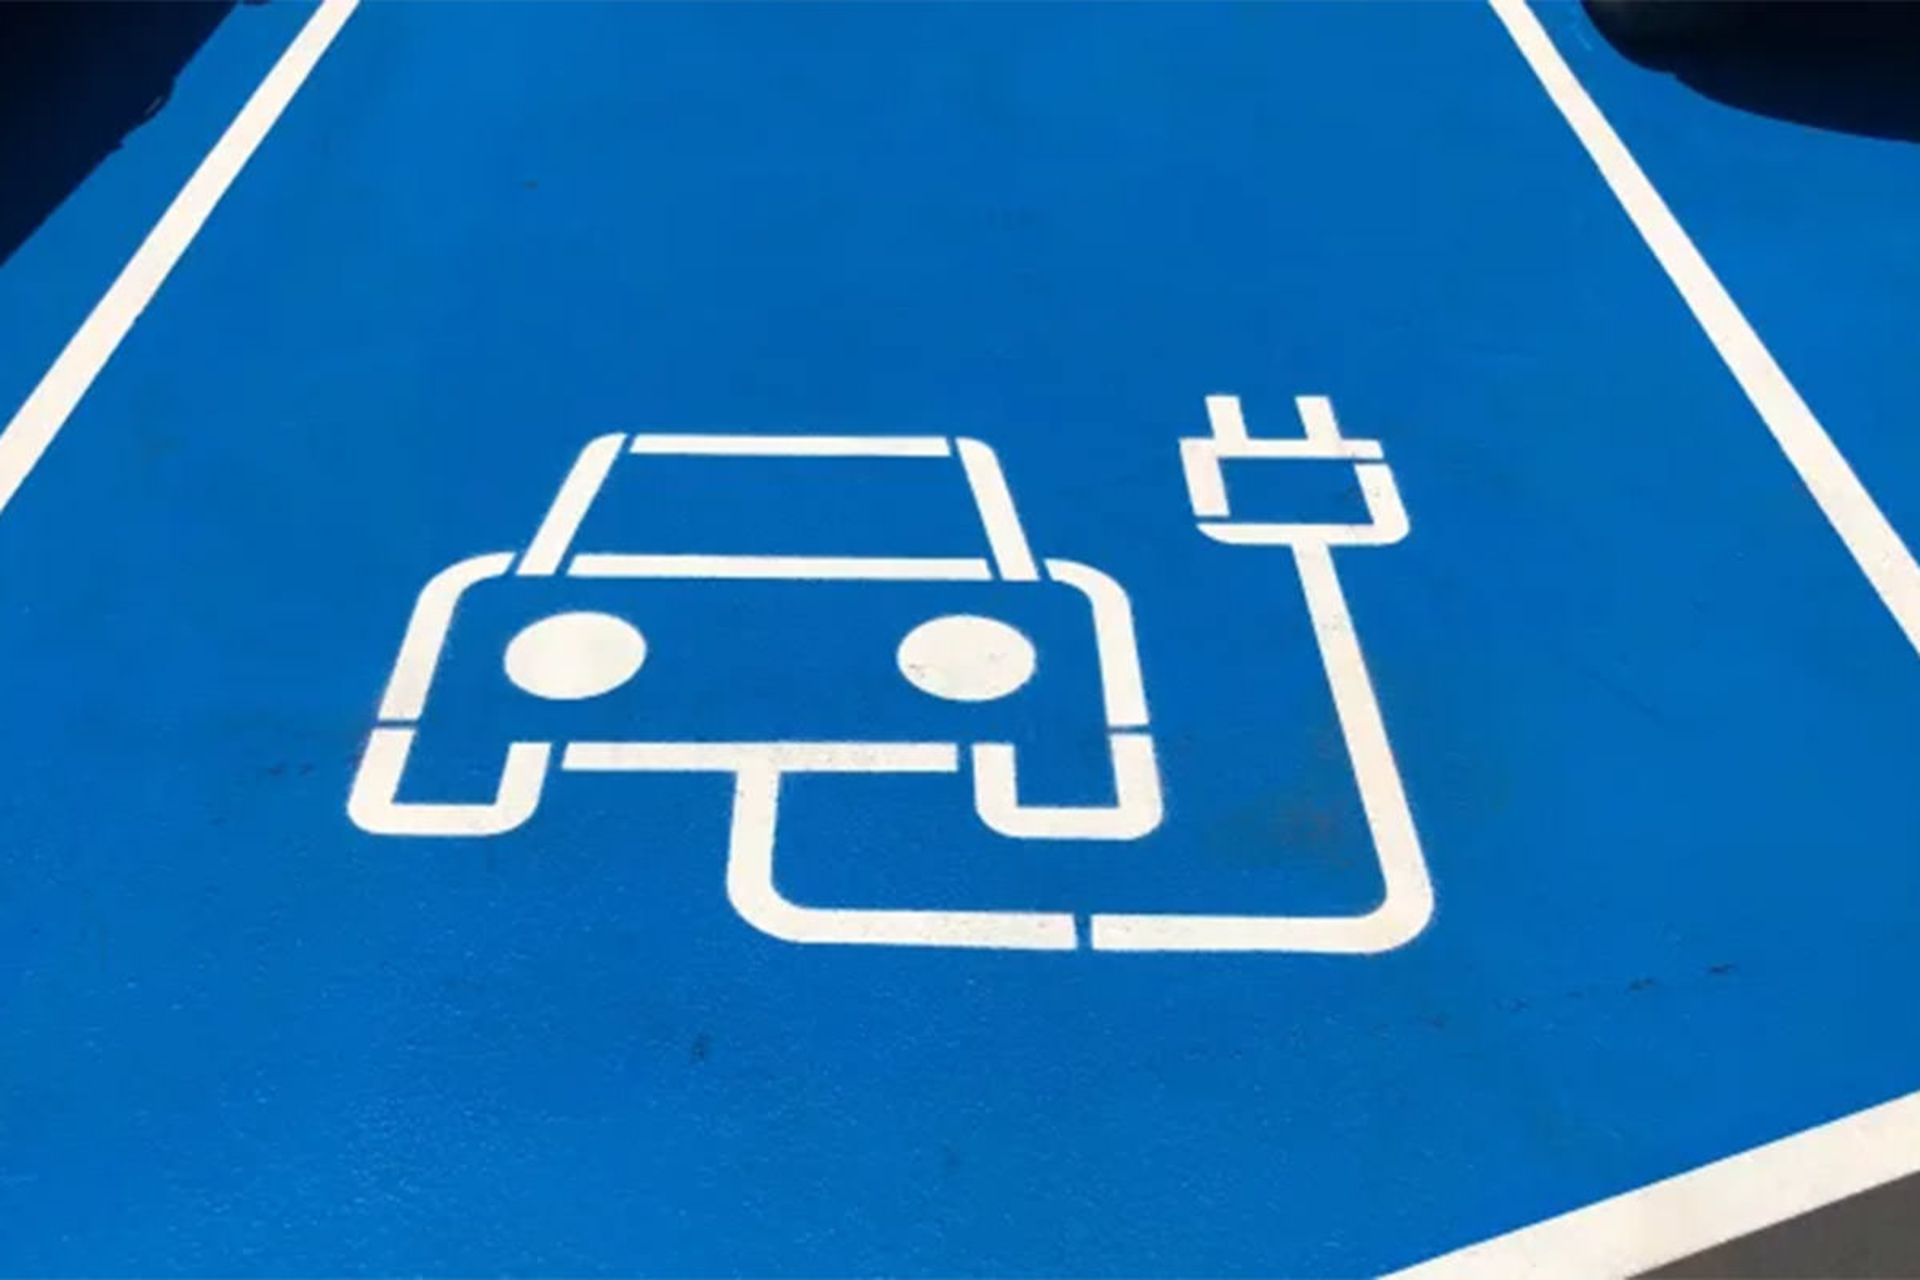 مرجع متخصصين ايران علامت شارژر خودروي الكتريكي / electric car روي جاده با رنگ آبي